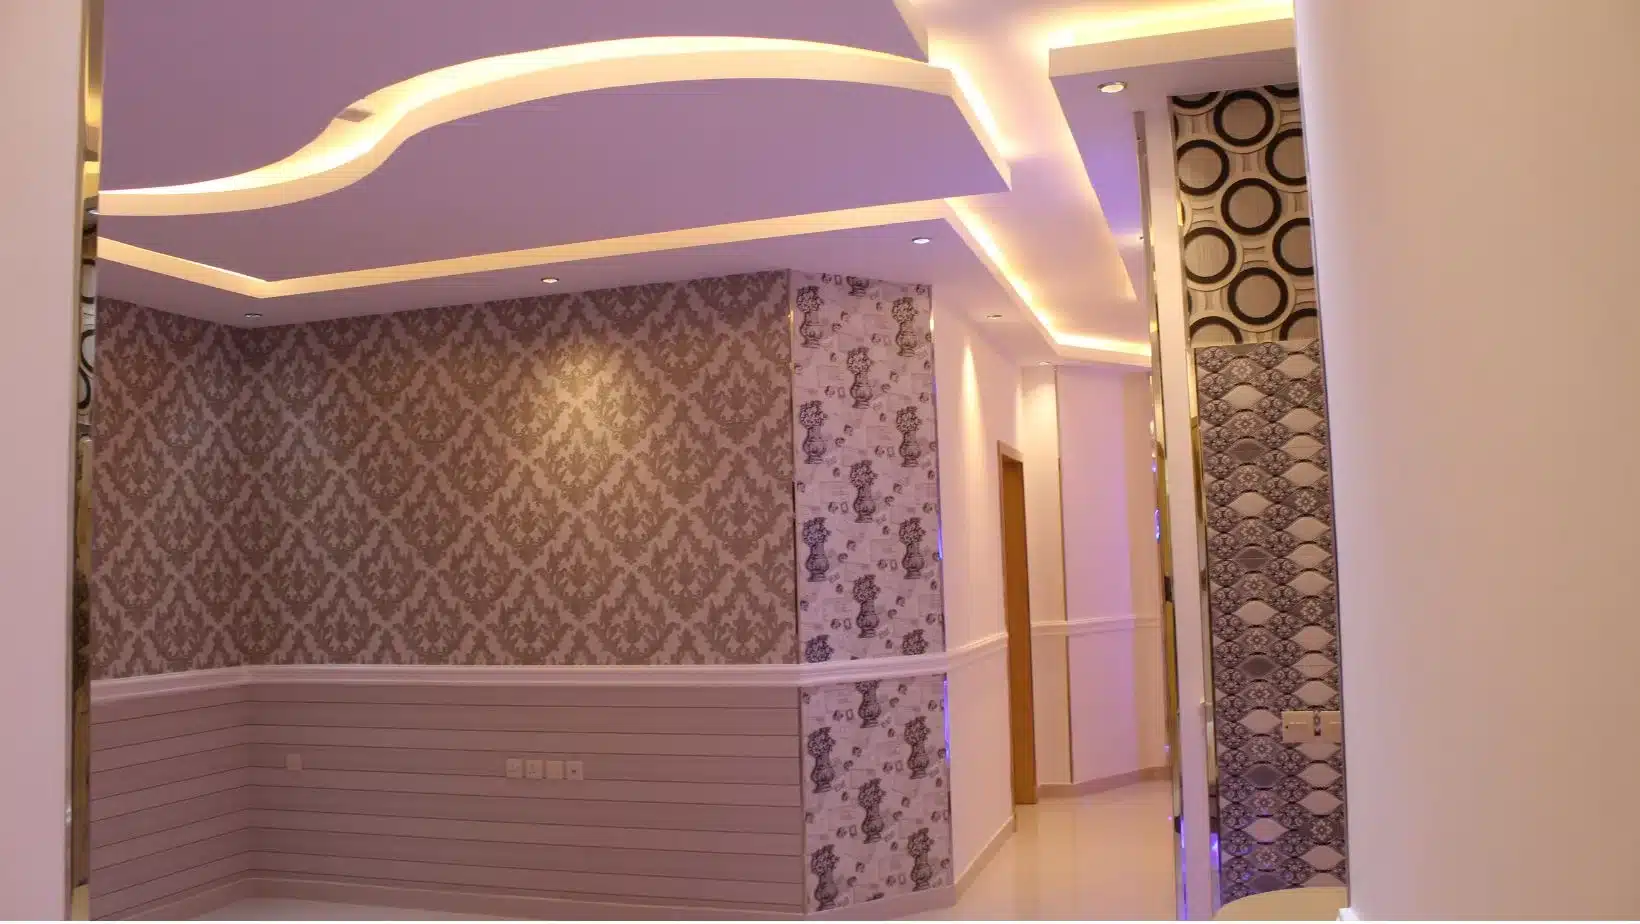 شقق الزيتونة للإيجار بالرياض، Zaytoon apartments for rent in Riyadh